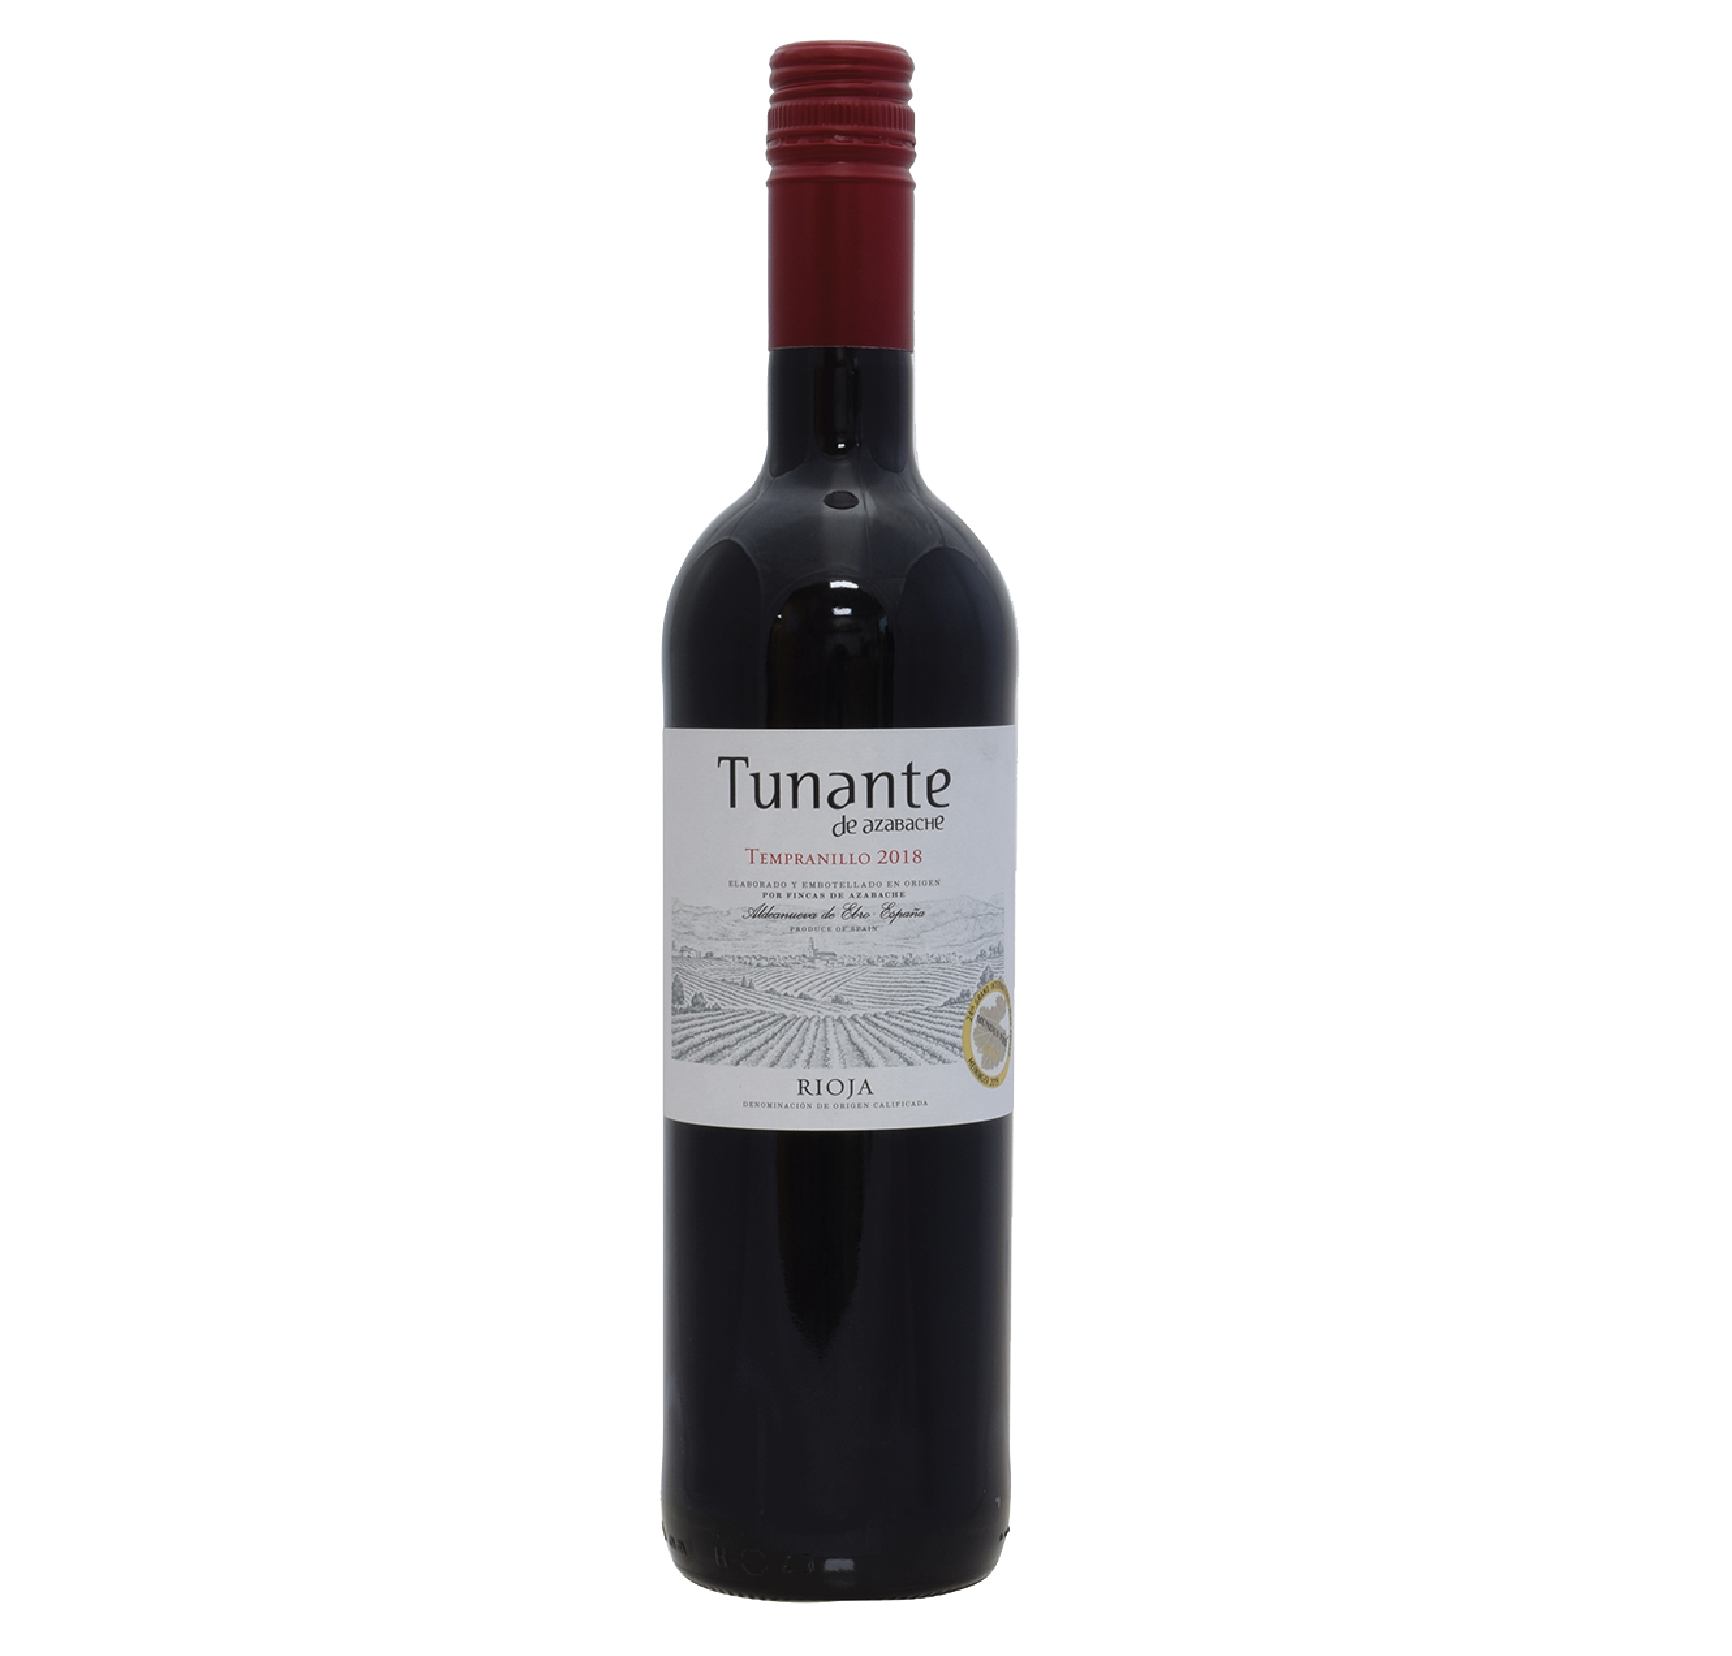 Rioja Tunante Tempranillo Fincas de Azabache